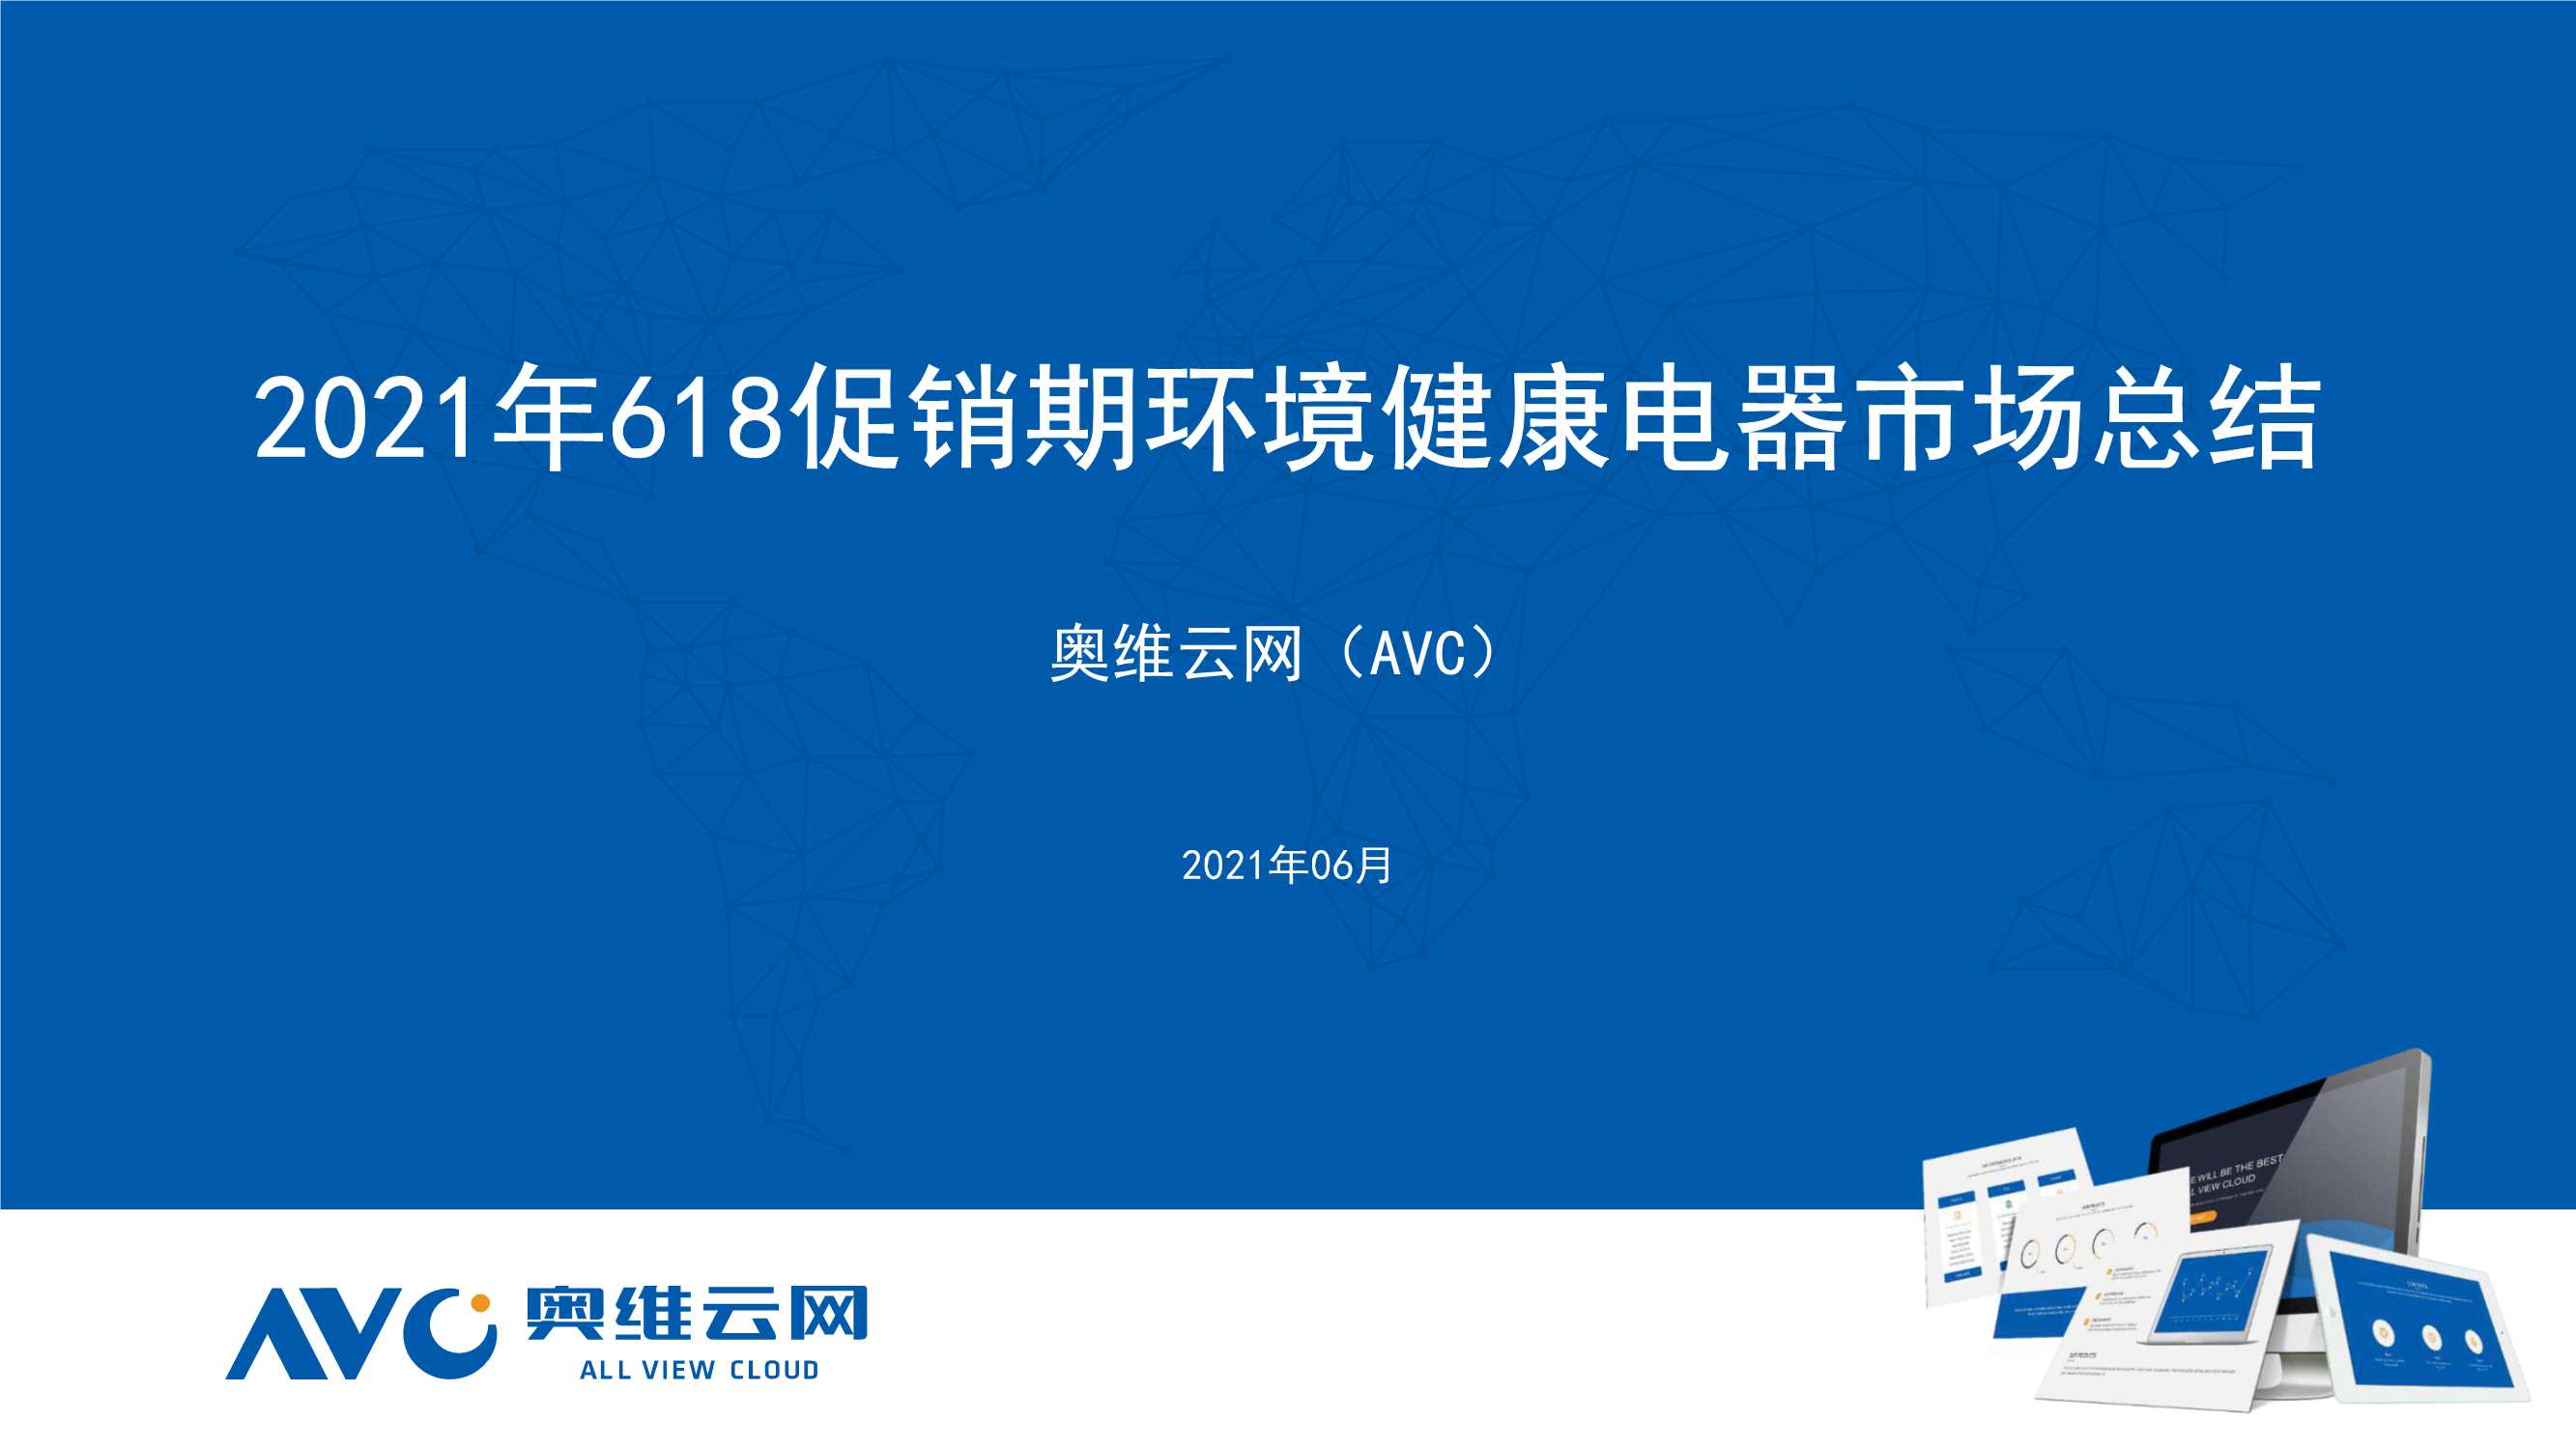 奥维云网-2021年618促销期环境健康电器市场总结-2021.07-59页